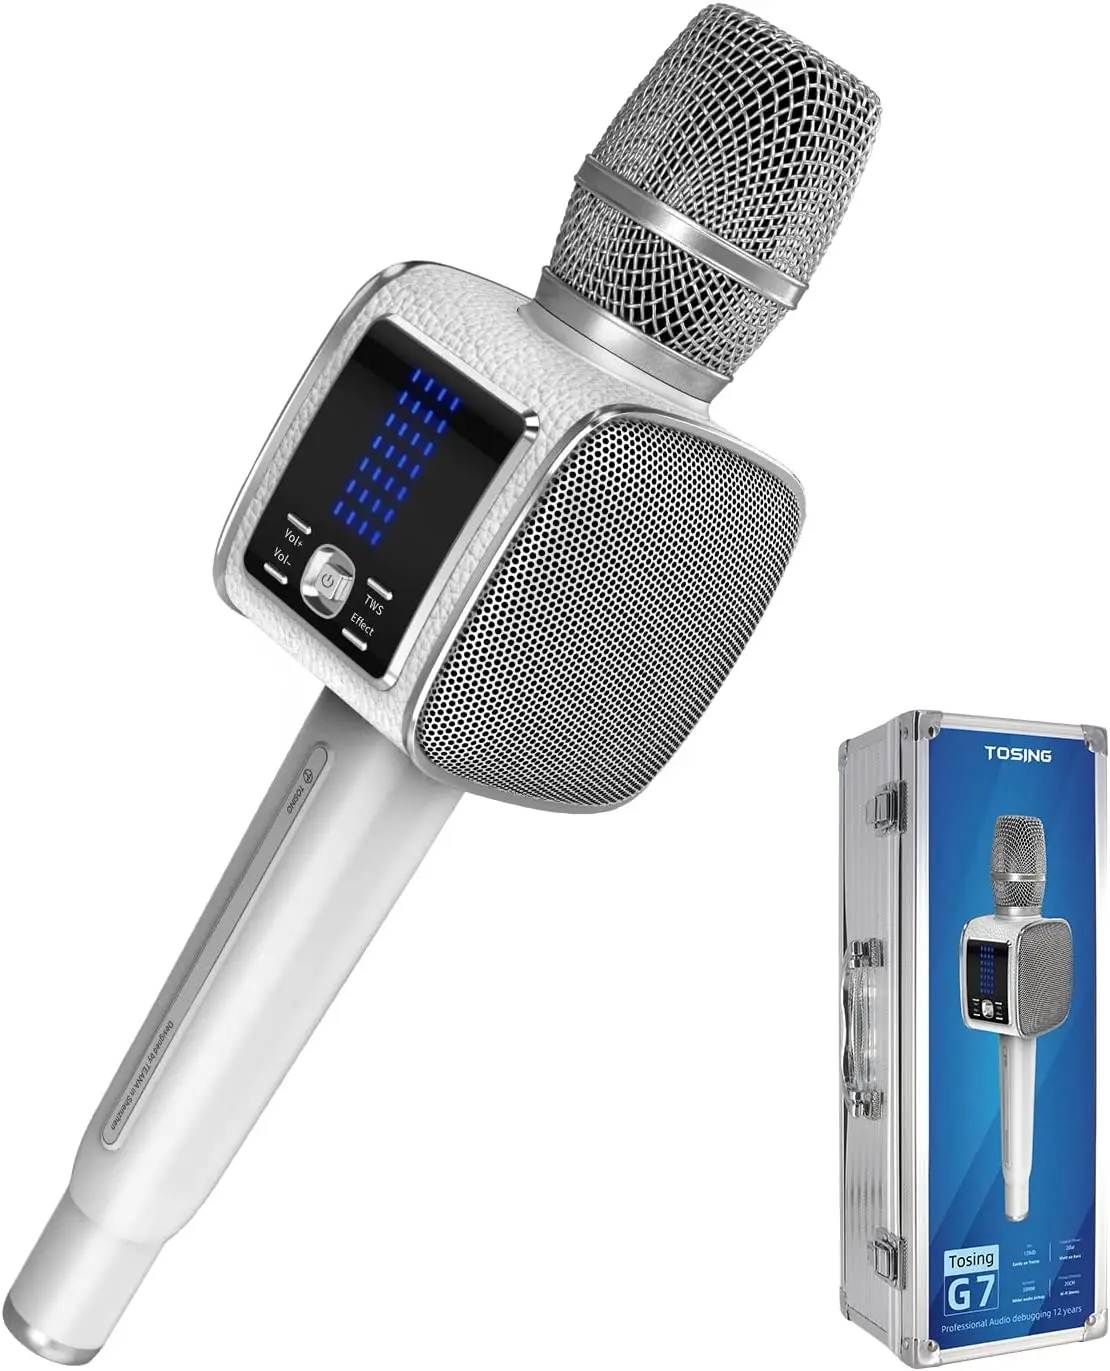 TOSING G7 Micro karaoké Adulte 20W,Professionnel/Musiciens/chanteurs,LCD  TWS 70hz/58mm Haut-Parleur 2 woofer et diaphragme intégré In tune  Amp/pc/TV/Voiture Chant Enregistrement Podcast(Blanc) : :  Instruments de musique et Sono